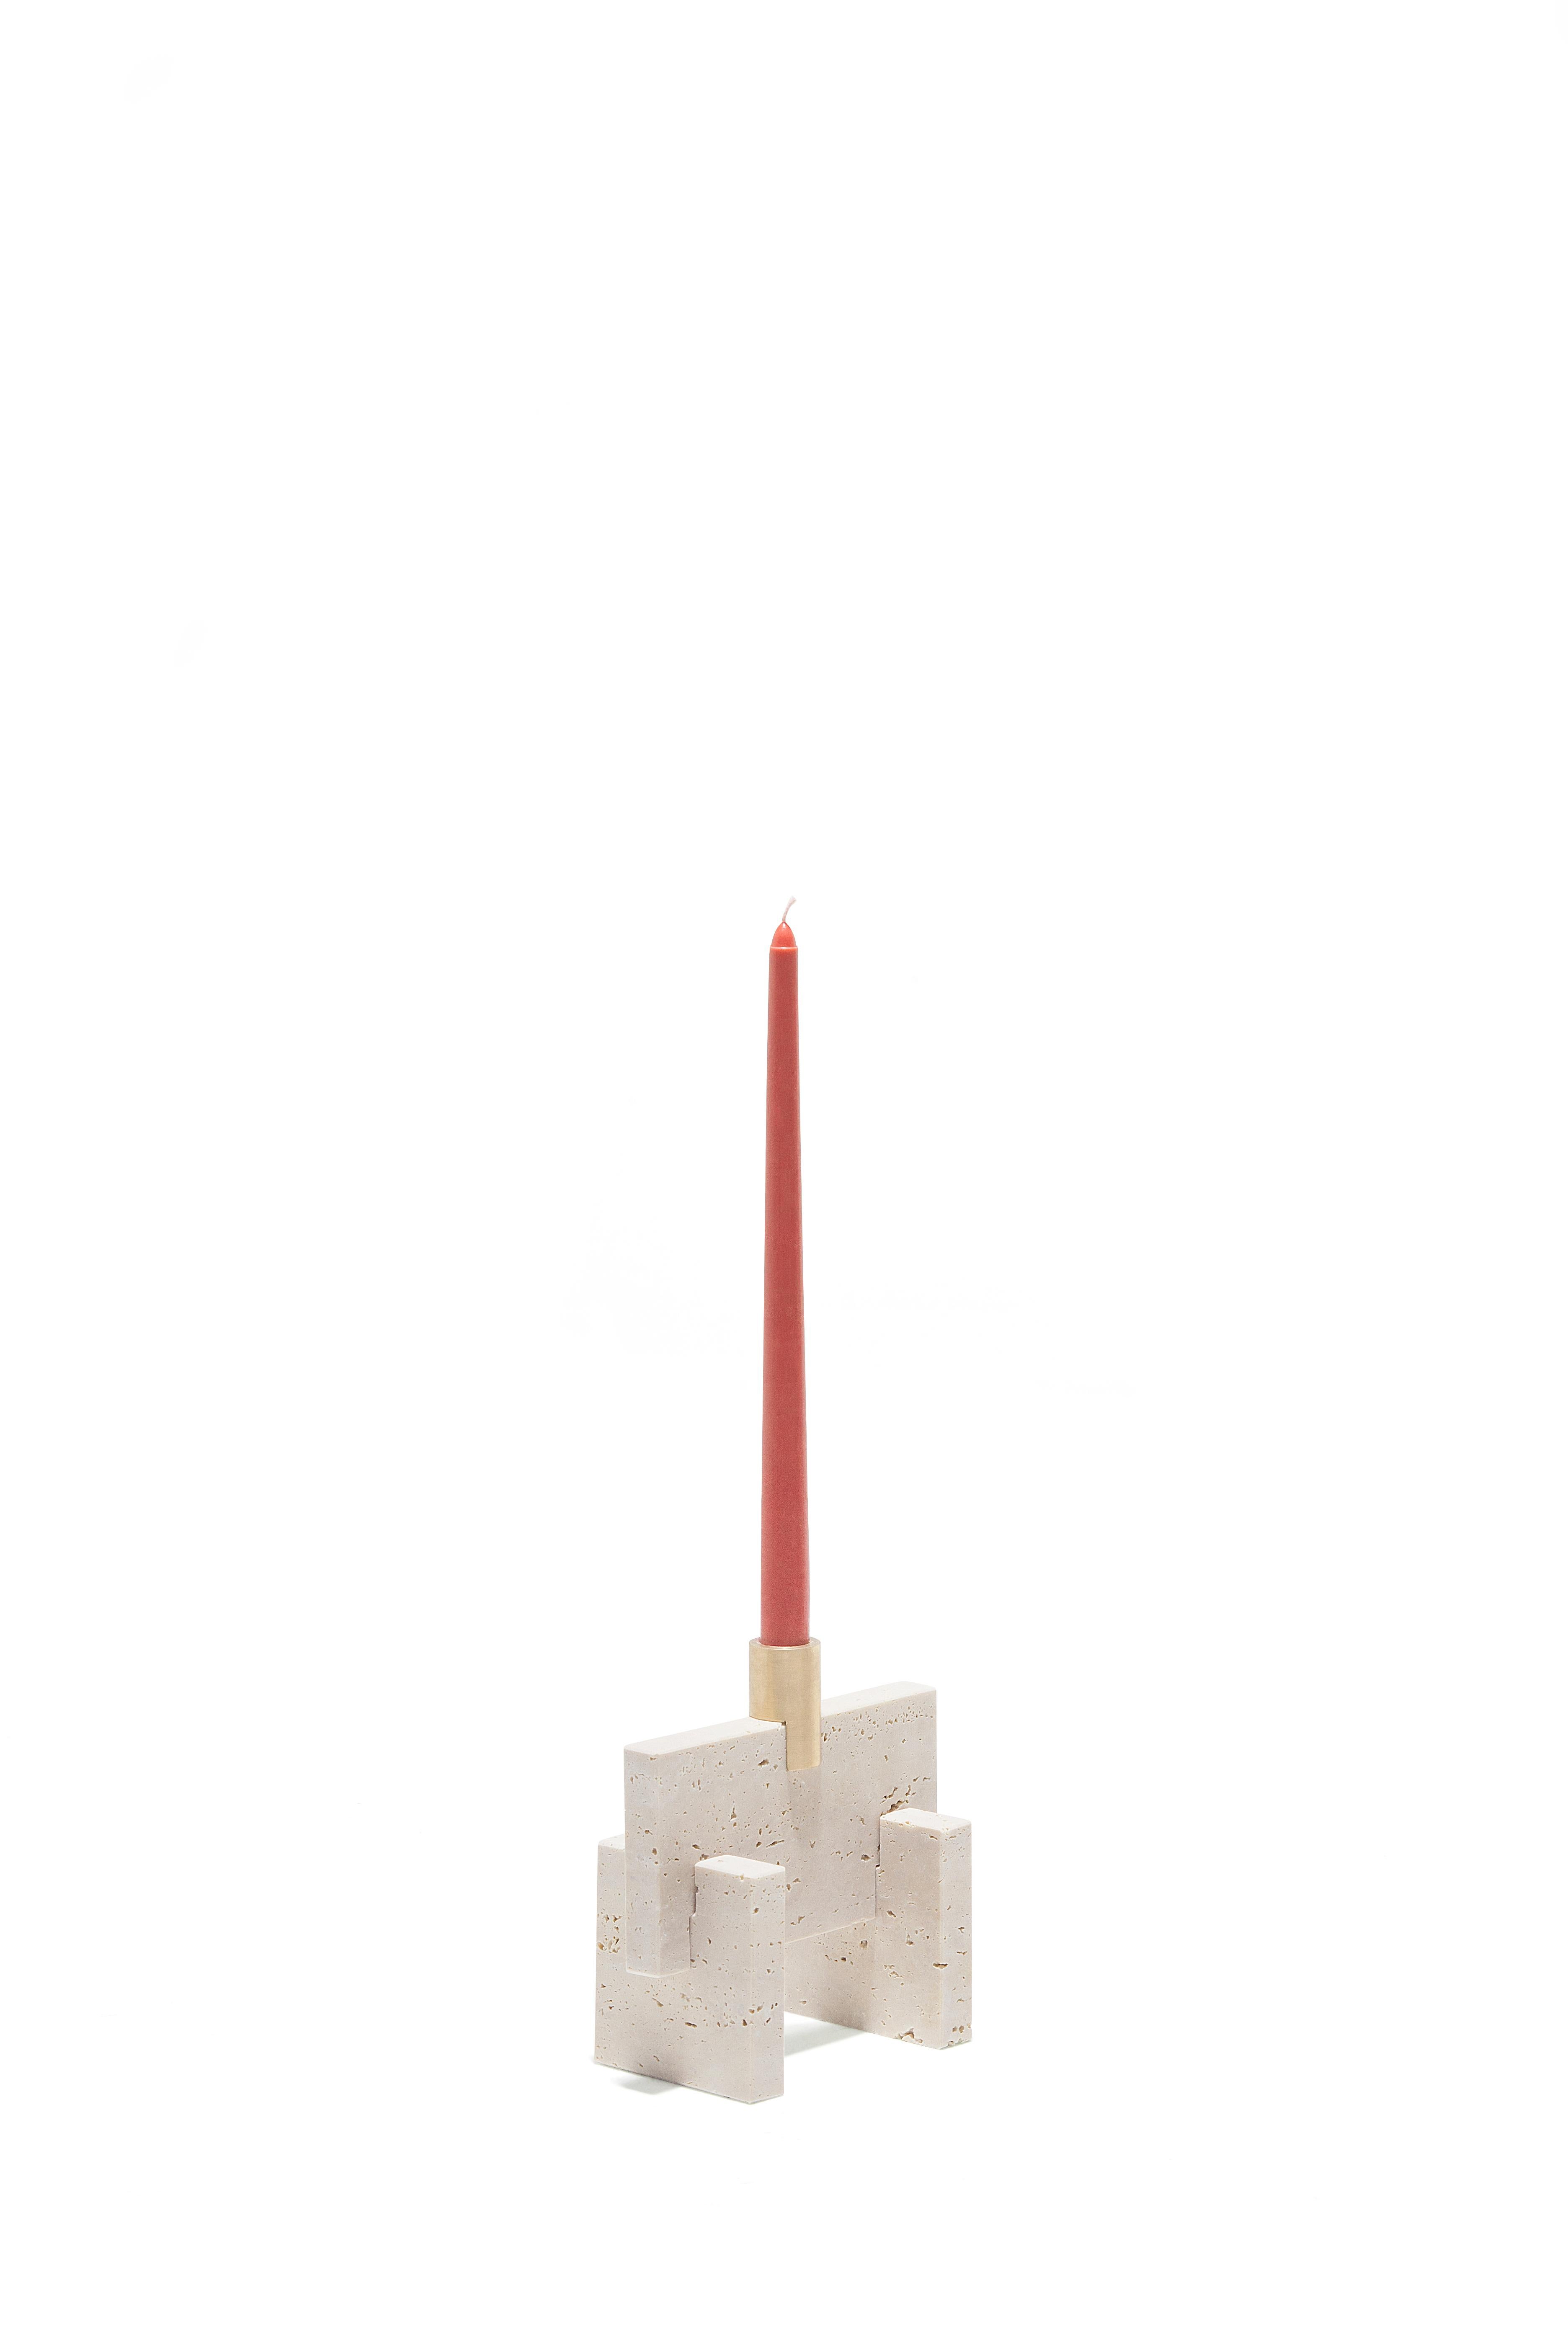 Le Fit Candle One est un bougeoir de style minimaliste en marbre Travertin traité. Ce bougeoir est composé de trois pièces de marbre et d'une pièce de laiton massif, toutes assemblées de manière logique et harmonieuse.
Josep Vila Capdevila, designer